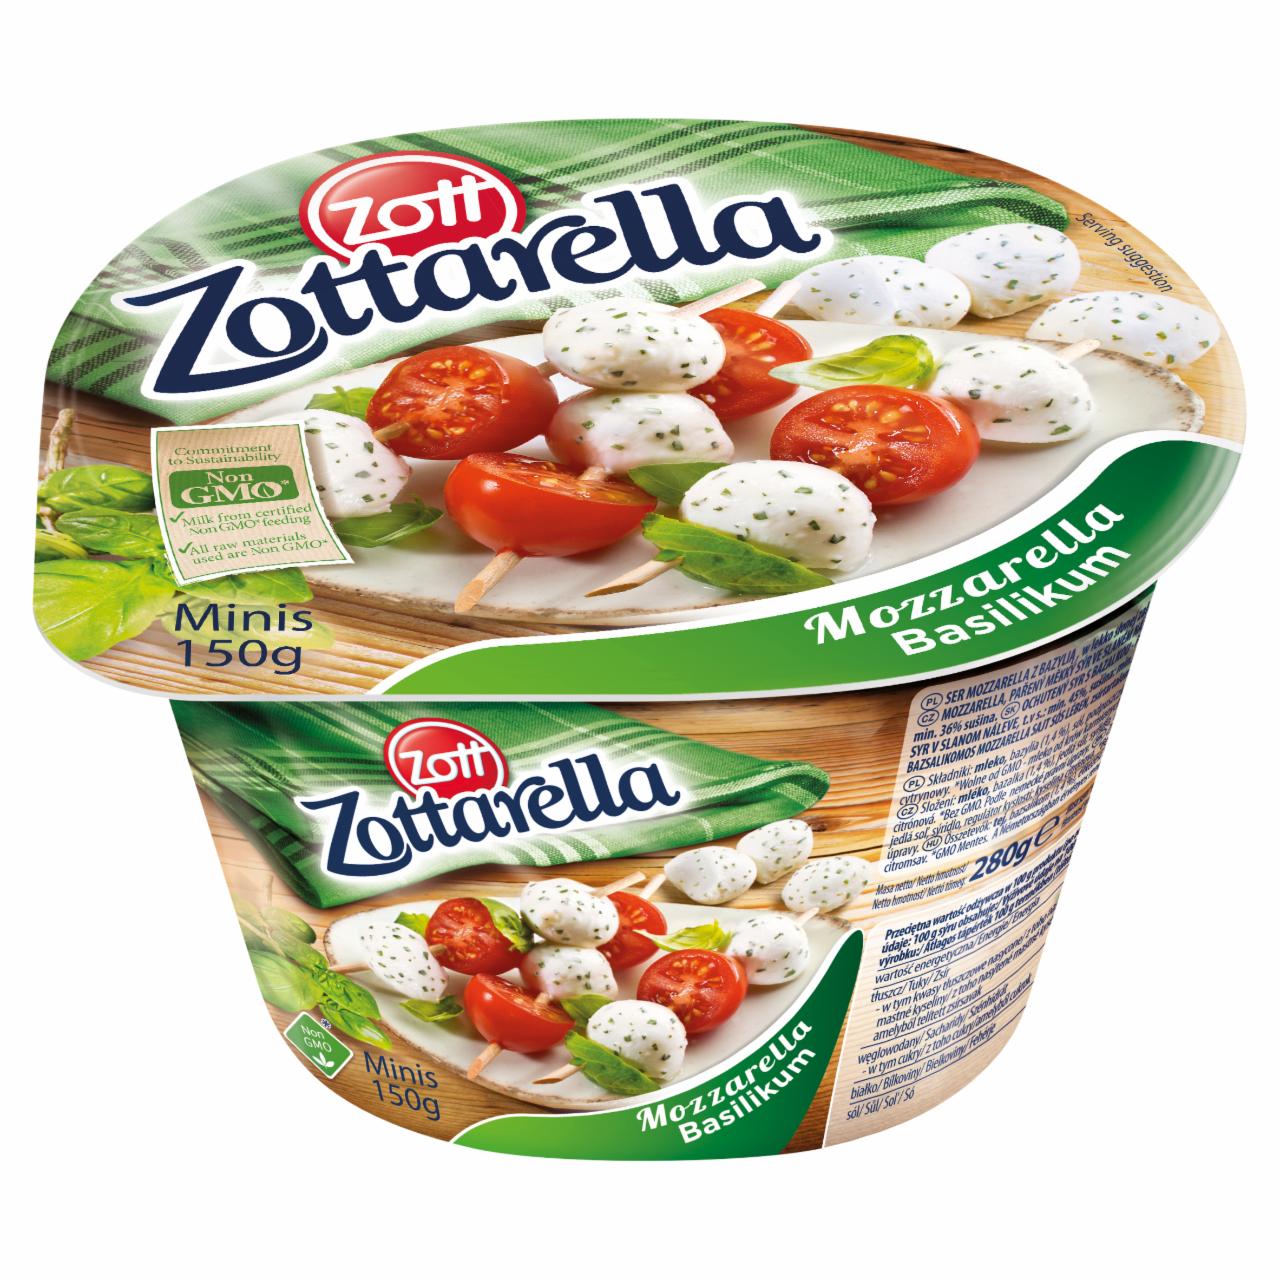 Képek - Zott Zottarella zsíros, lágy bazsalikomos mozzarella sajt sós lében 150 g